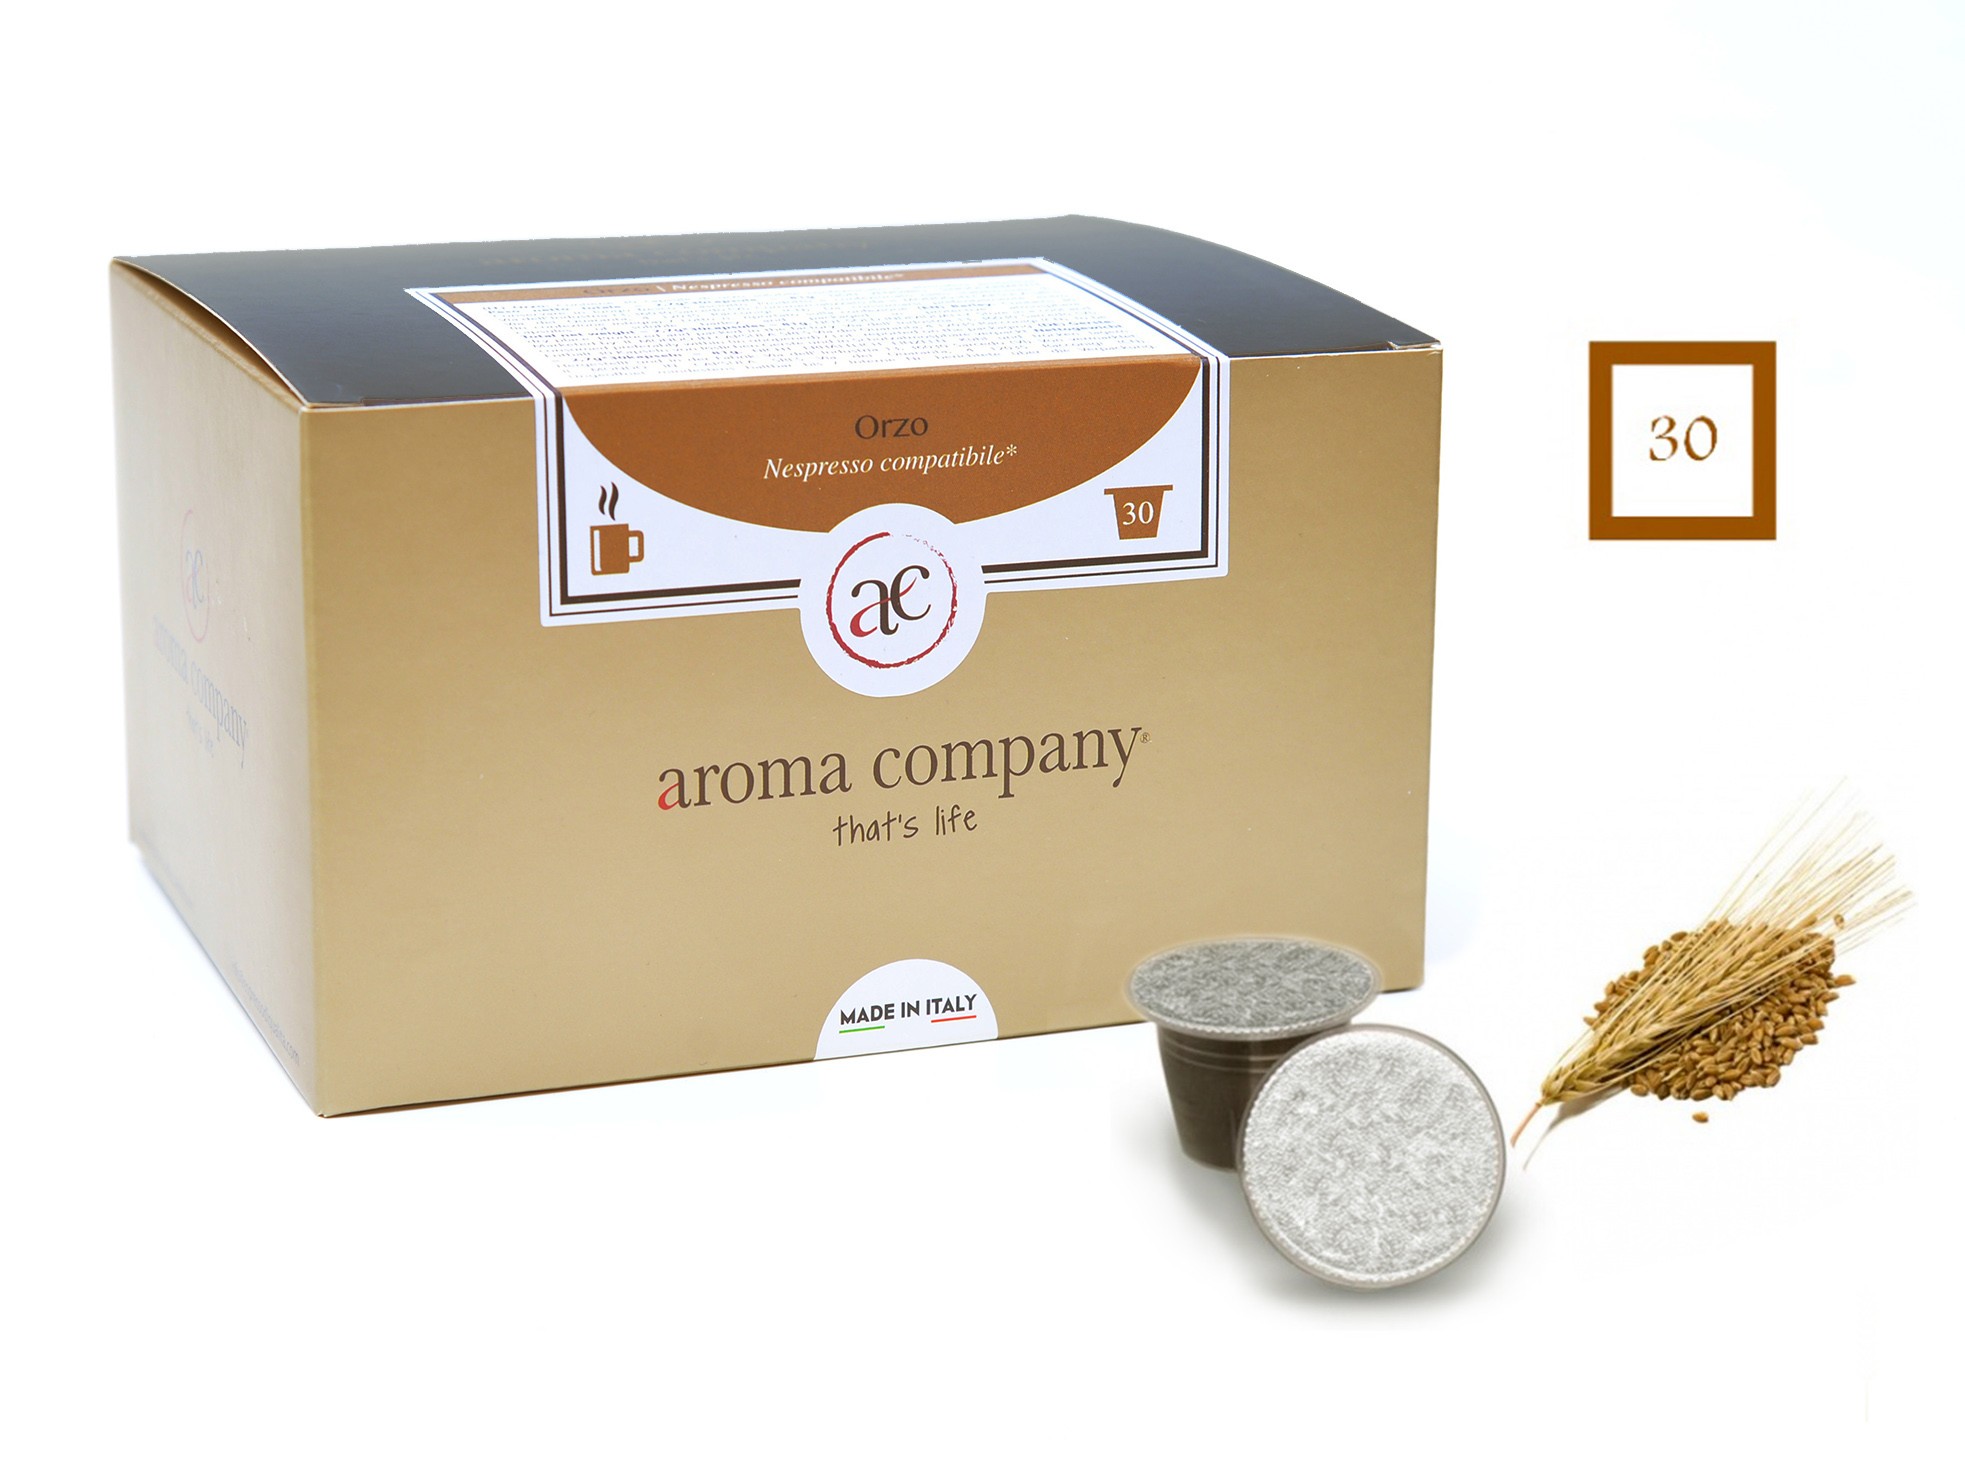 Orzo solubile conf. da 30 capsule (Nespresso compatibile*) - Aroma Company  - Il Mondo in Capsula